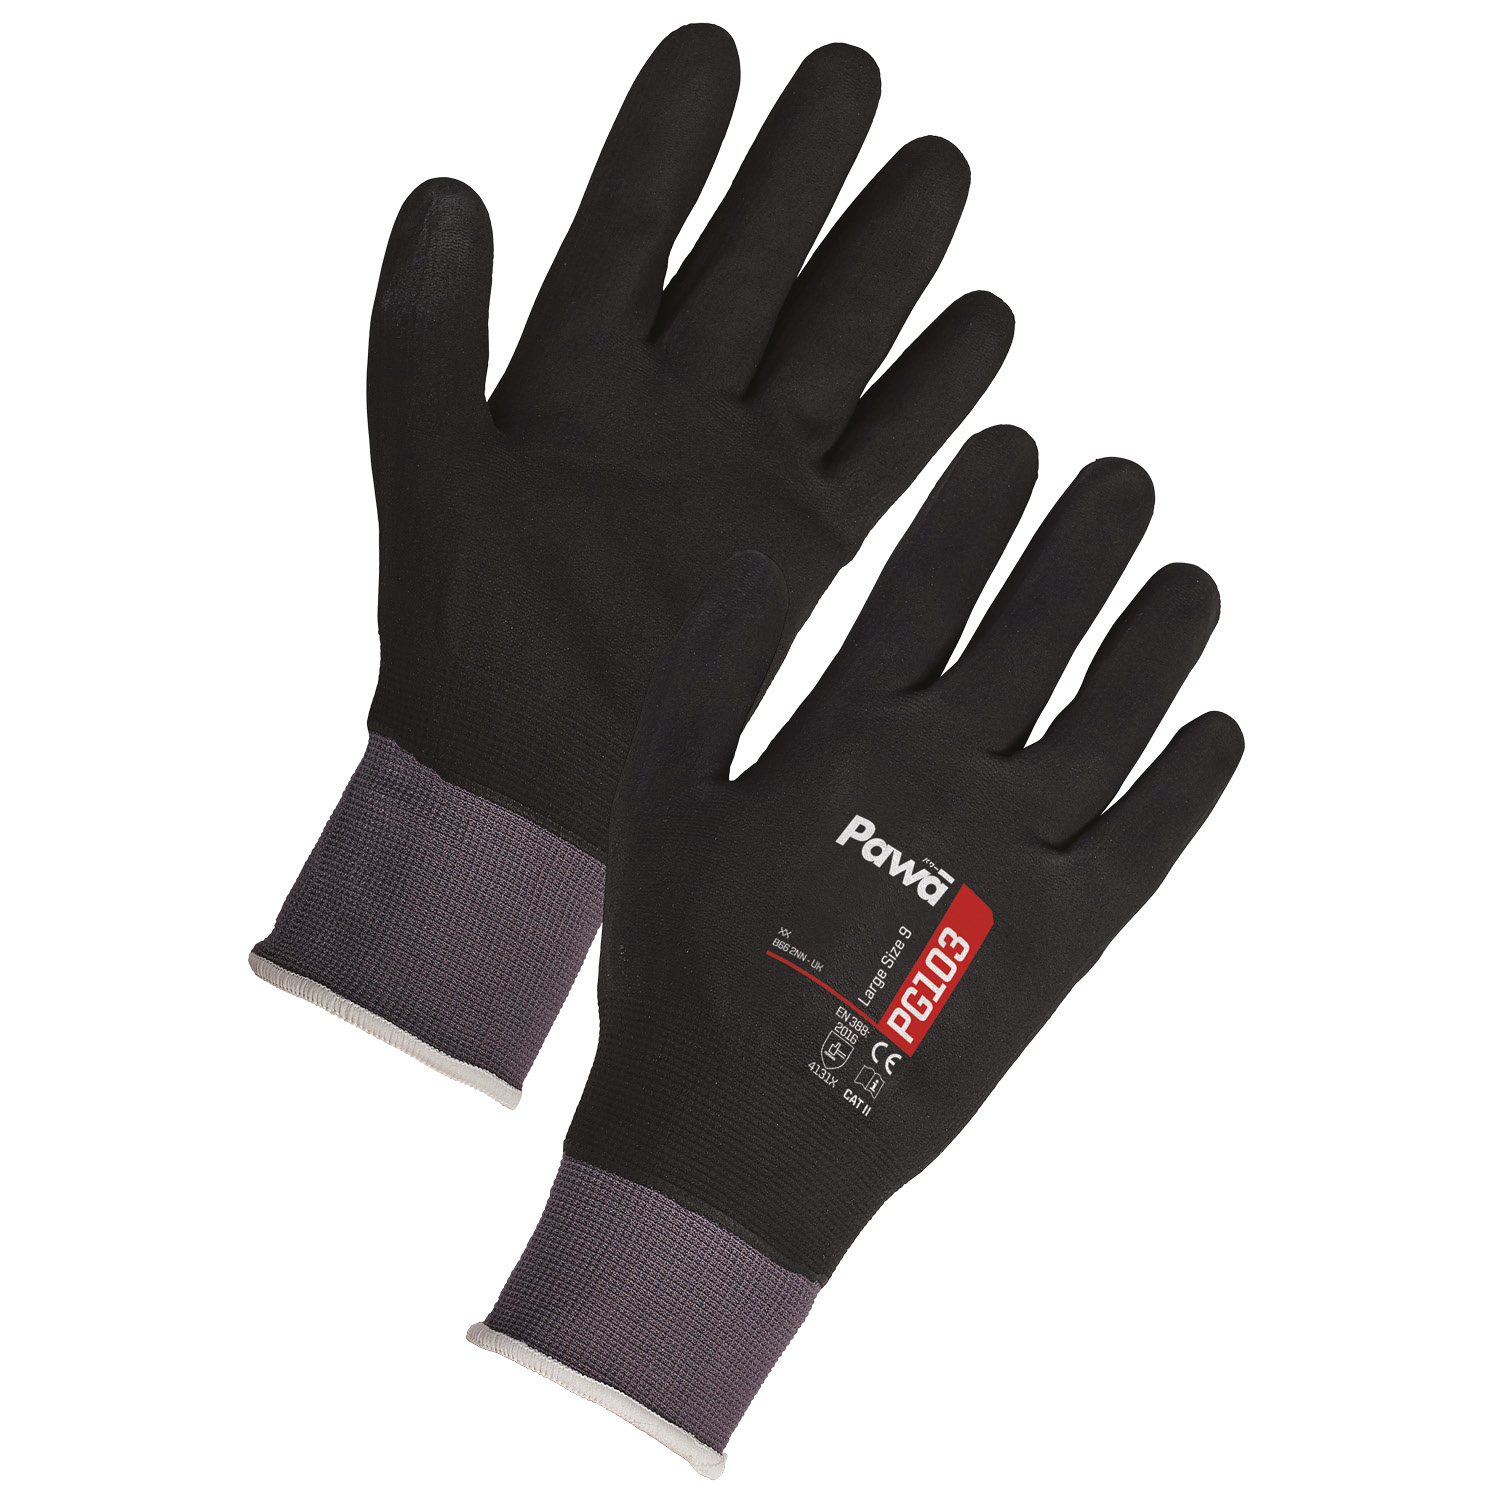 Pawa Gloves 103 - Small